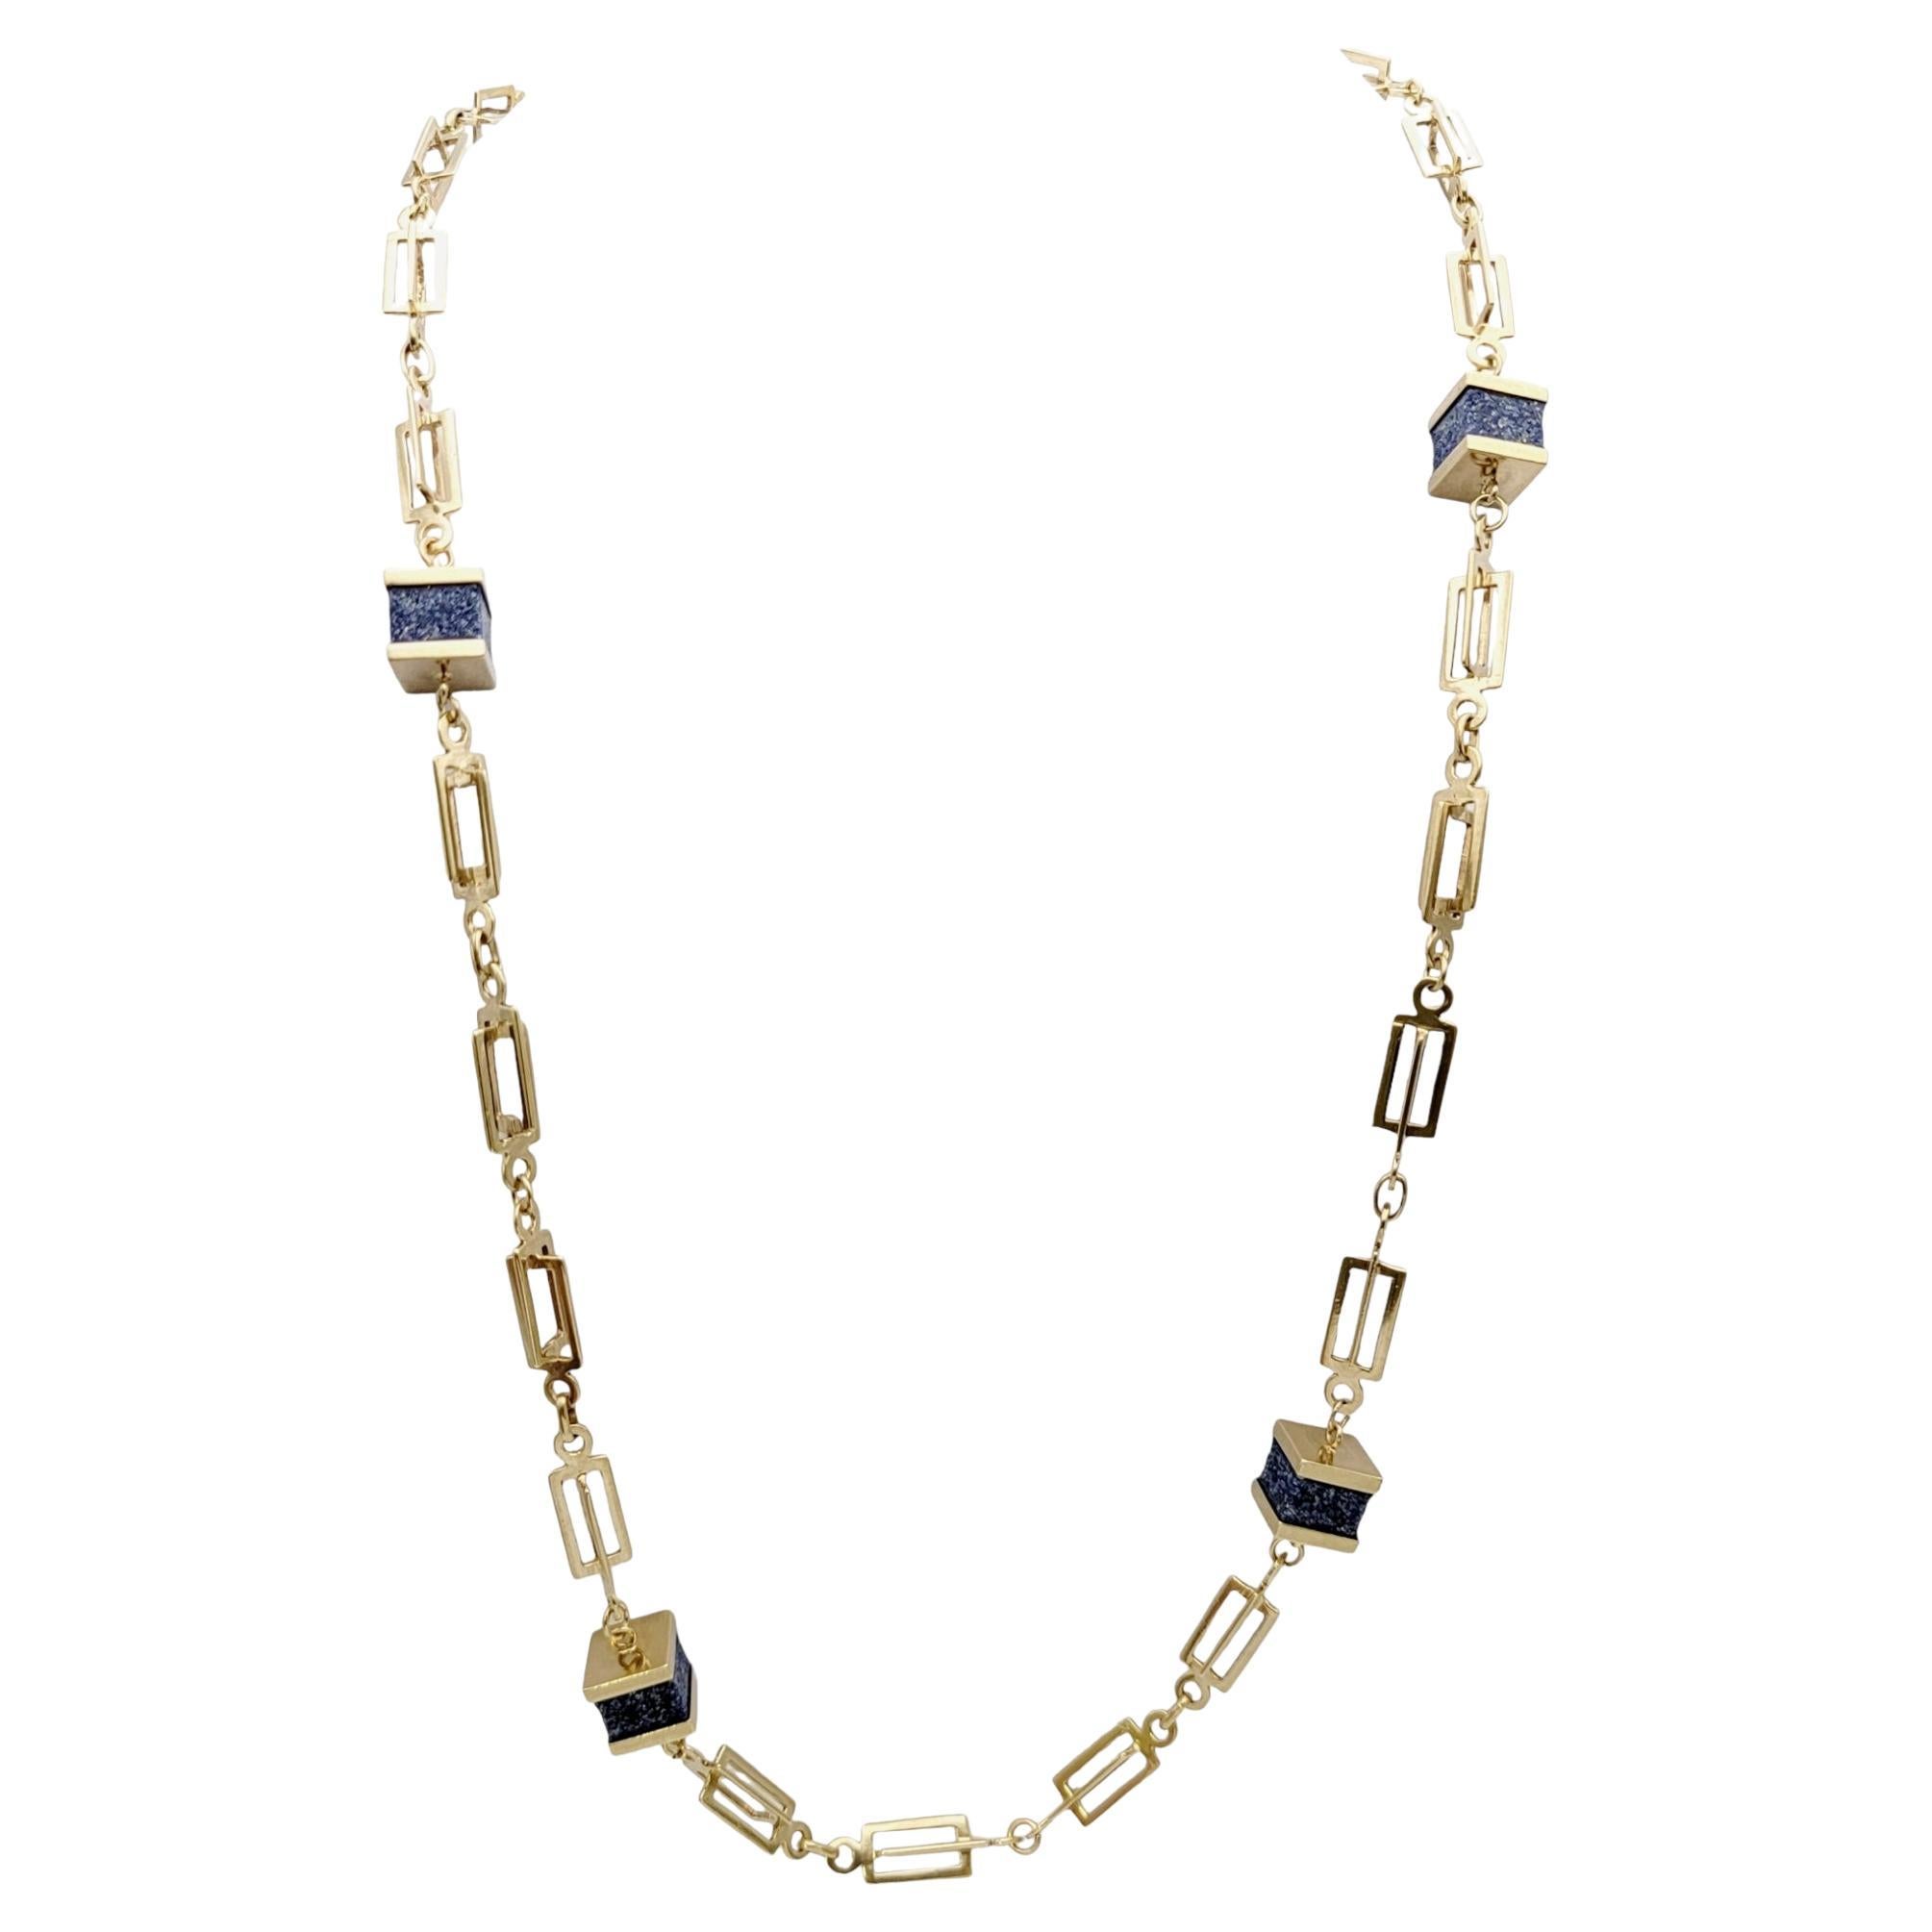 37" lange quadratische Lapis Lazuli Station Halskette mit 14 Karat Gelbgold Kette